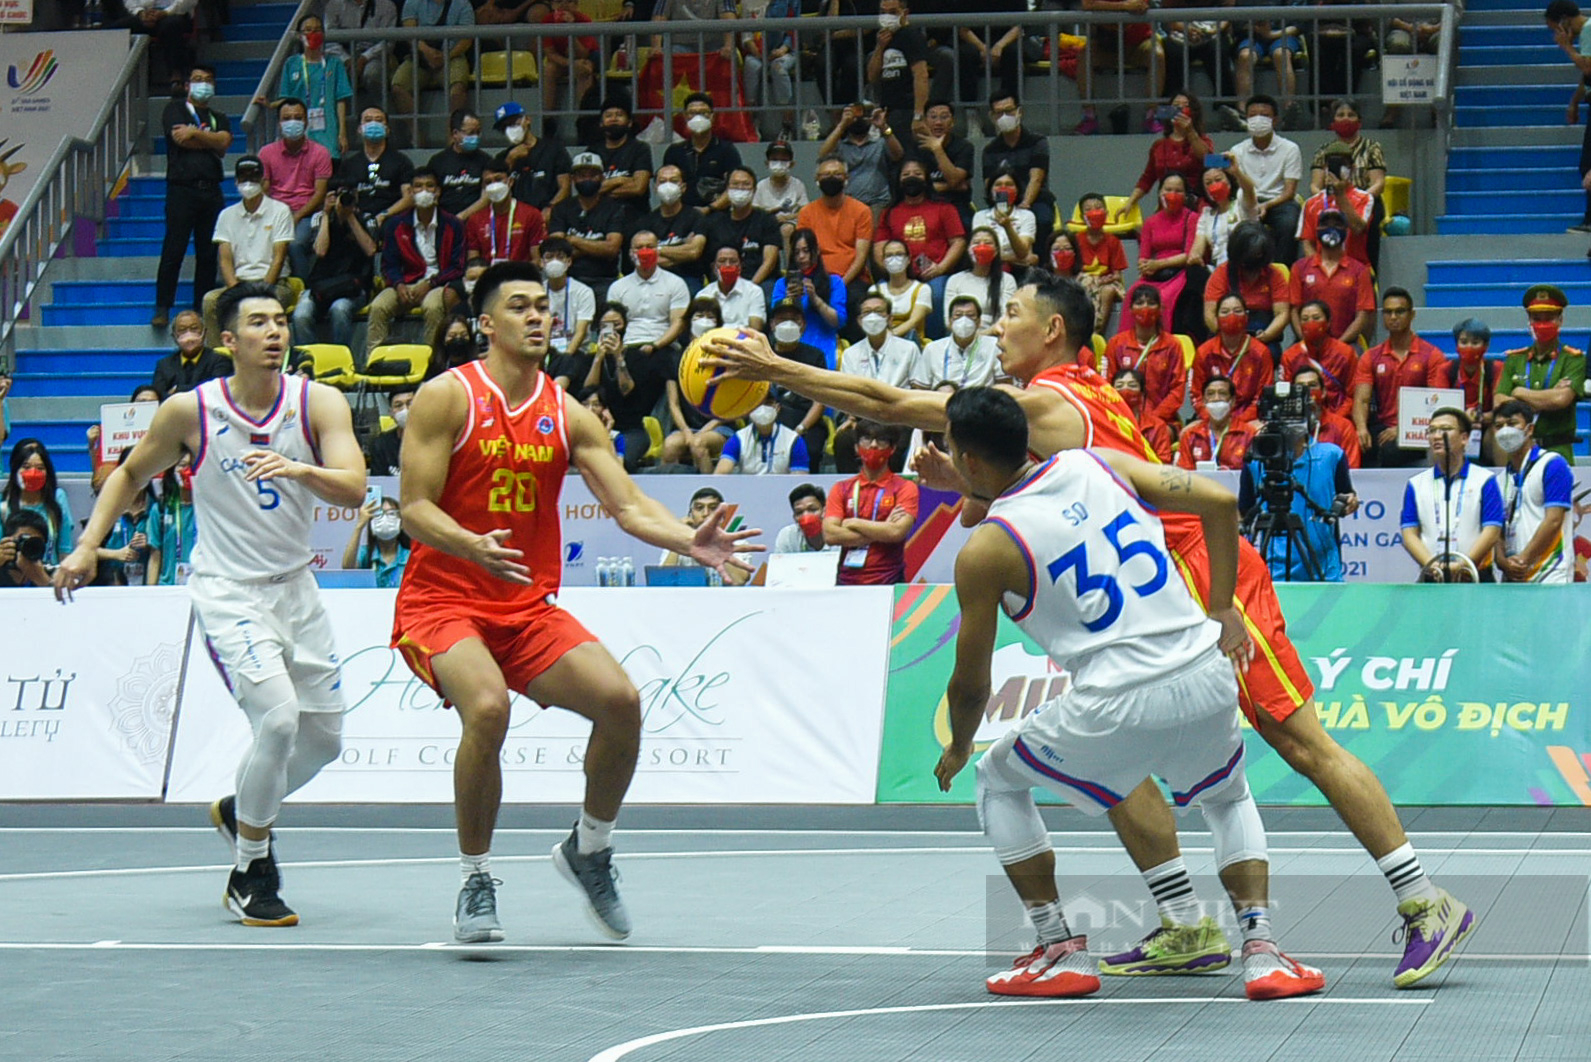 Đội tuyển nam Việt Nam giành chiến thắng trong trận đầu khởi tranh môn bóng rổ - Ảnh 5.